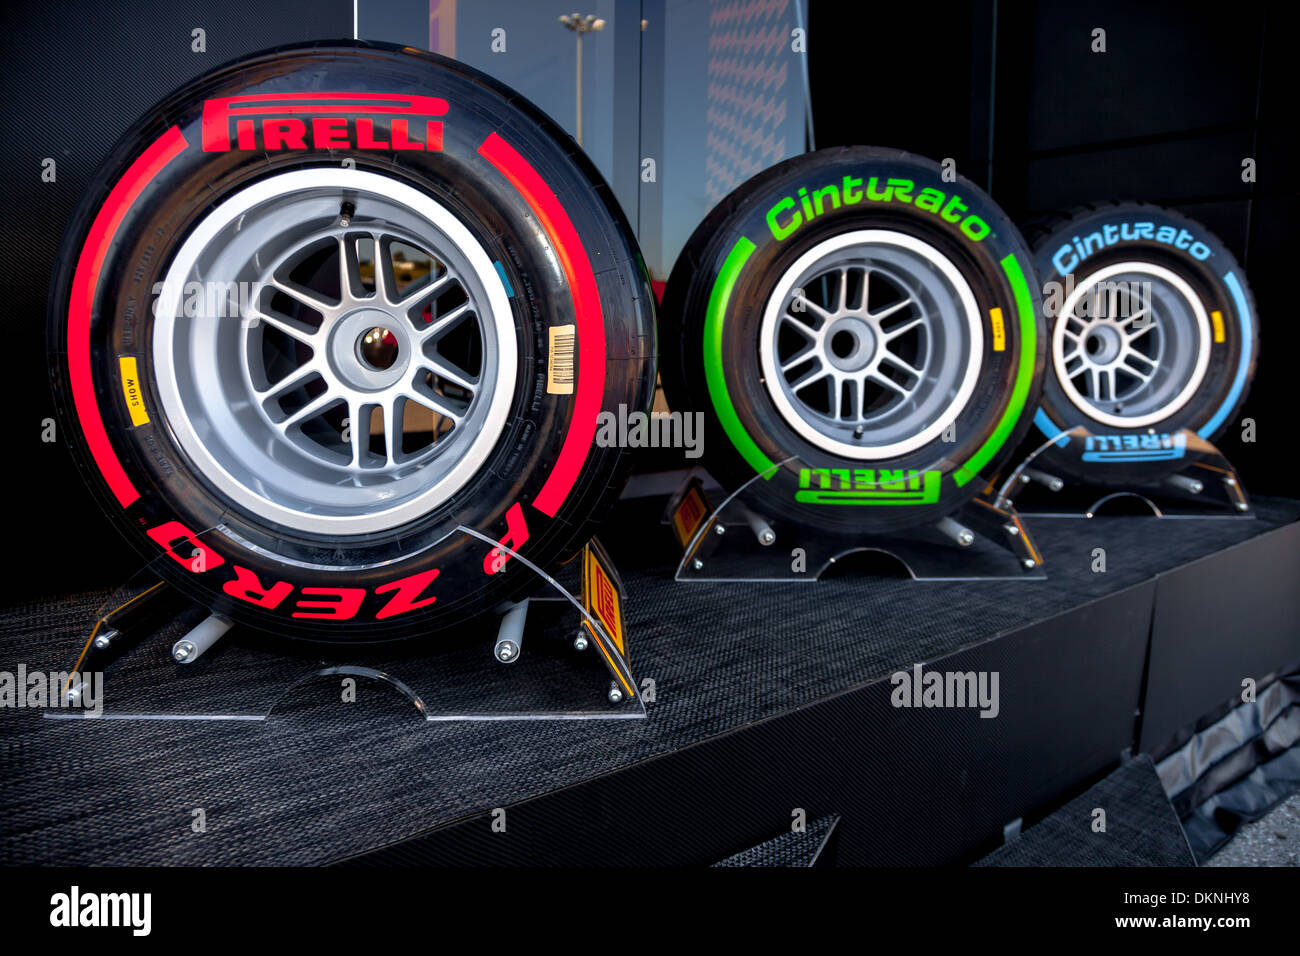 Esposizione dei diversi set di pneumatici Pirelli per il campionato di Formula 1 del 2013 Foto Stock